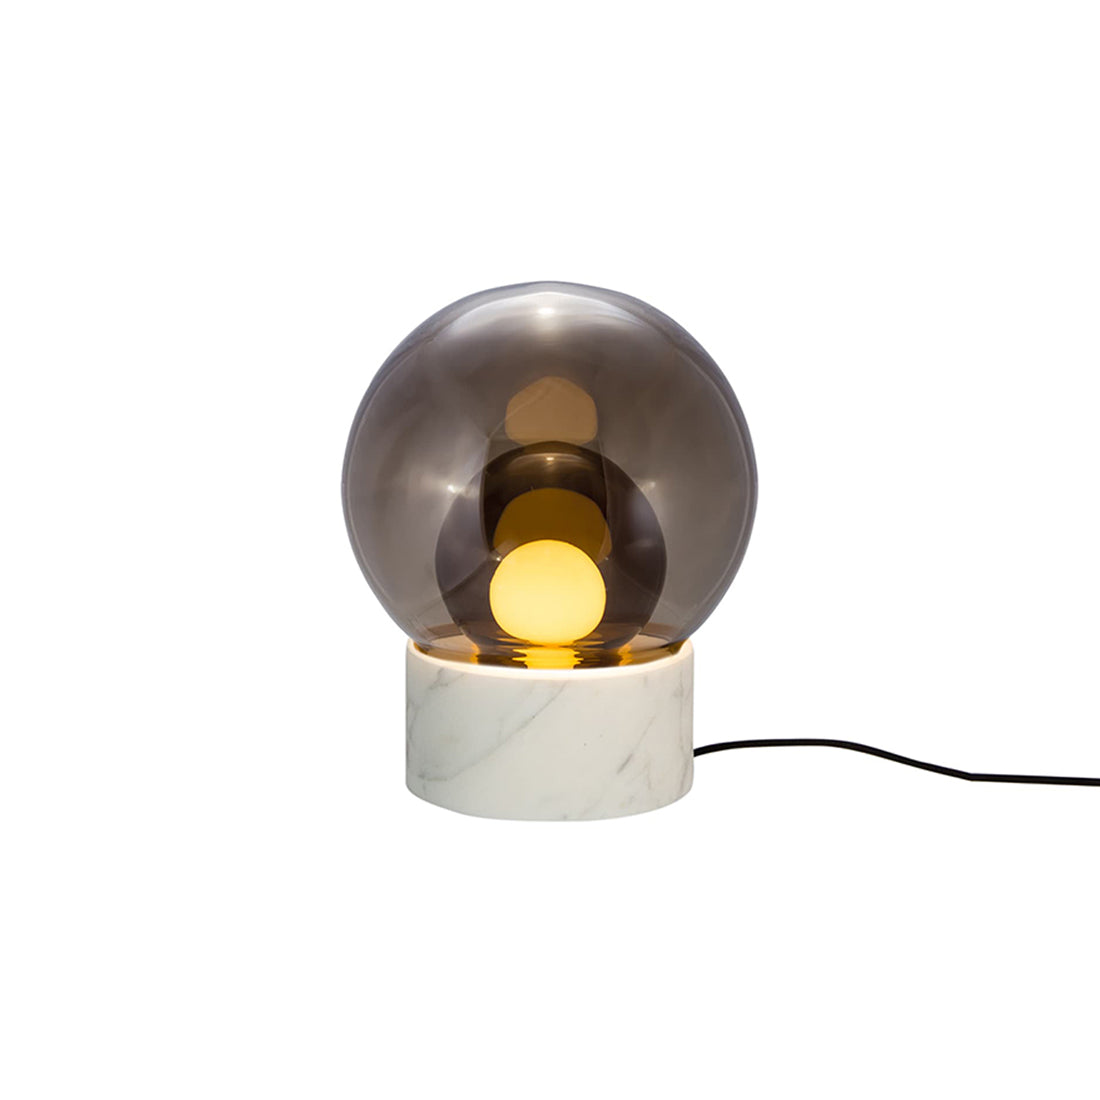 Boule Table Lamp: Smoke Gray + Smoke Gray + Carrara White Stone